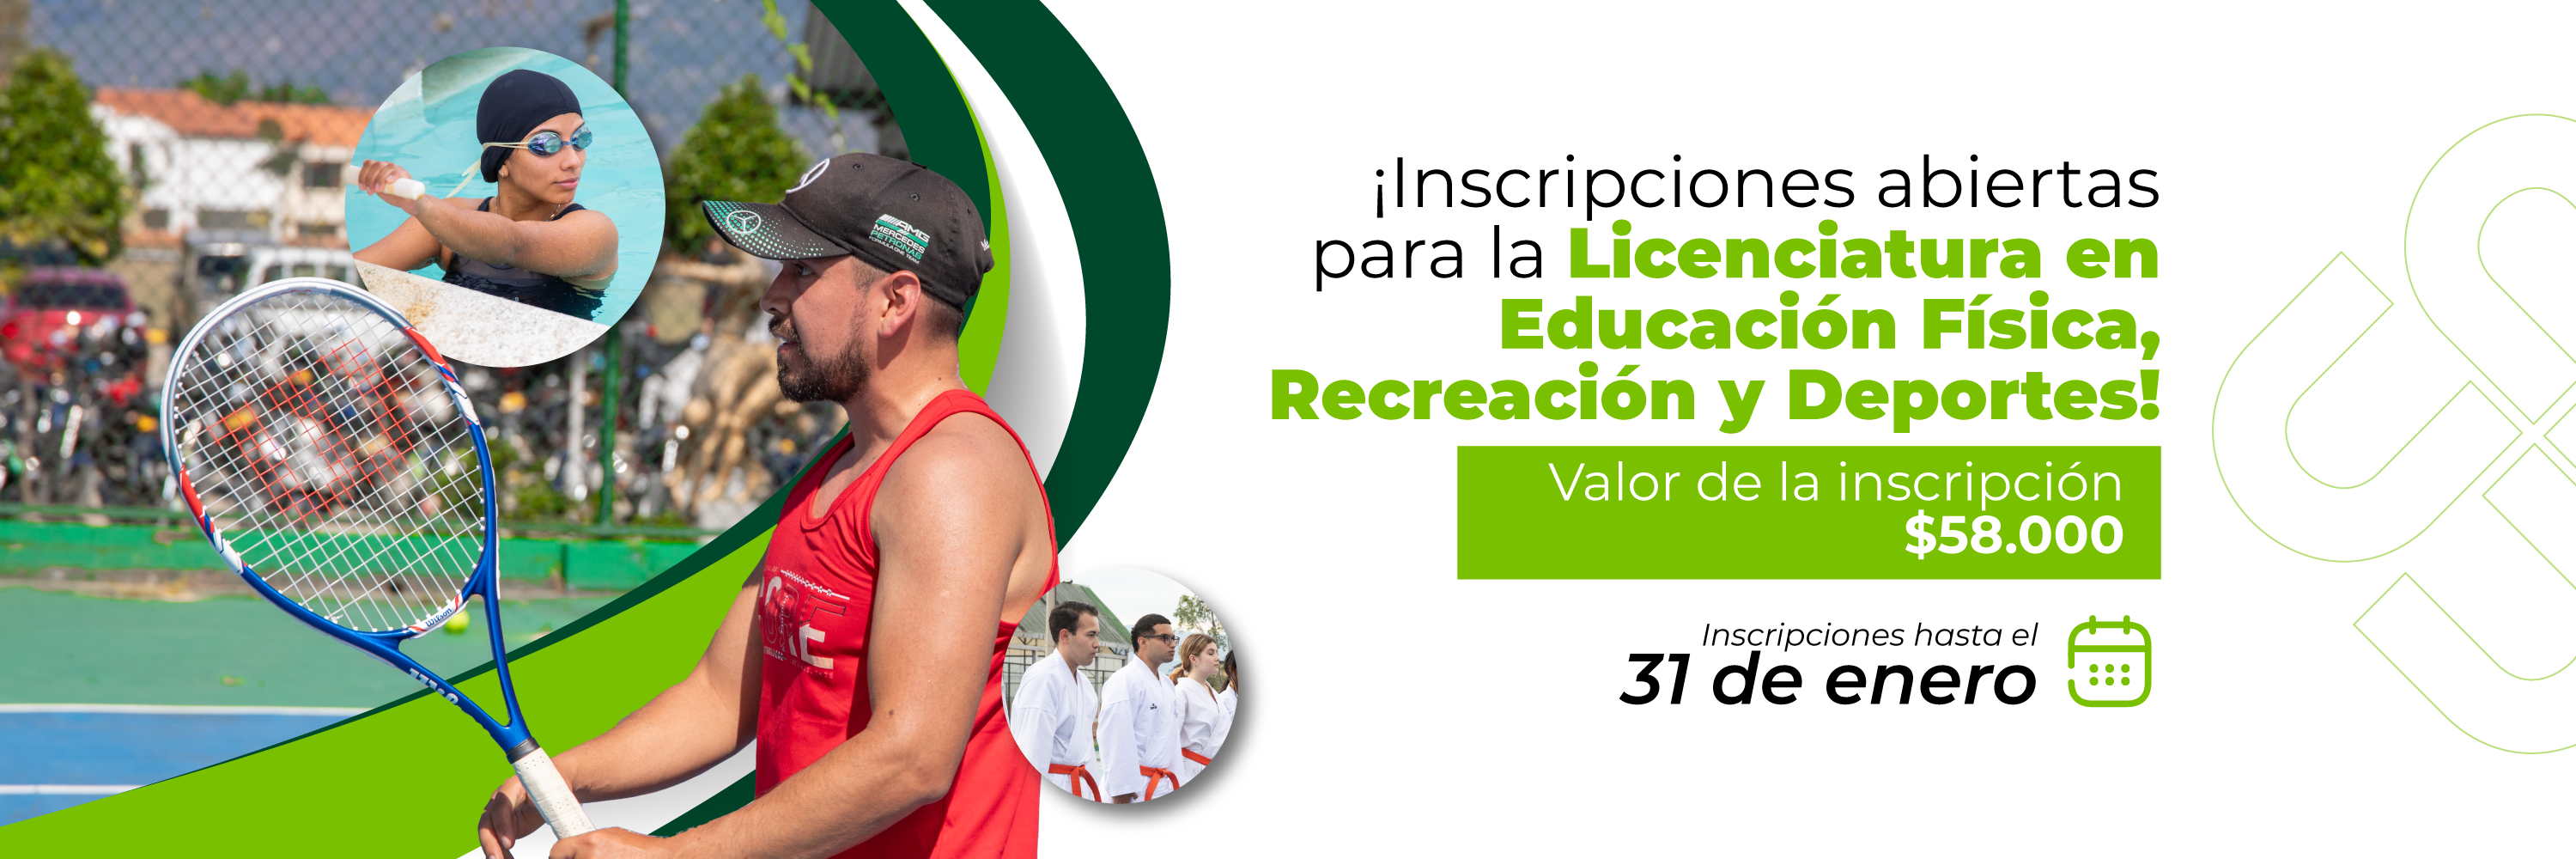 inscripciones abiertas para la licenciatura de educación física, recreación y deportes